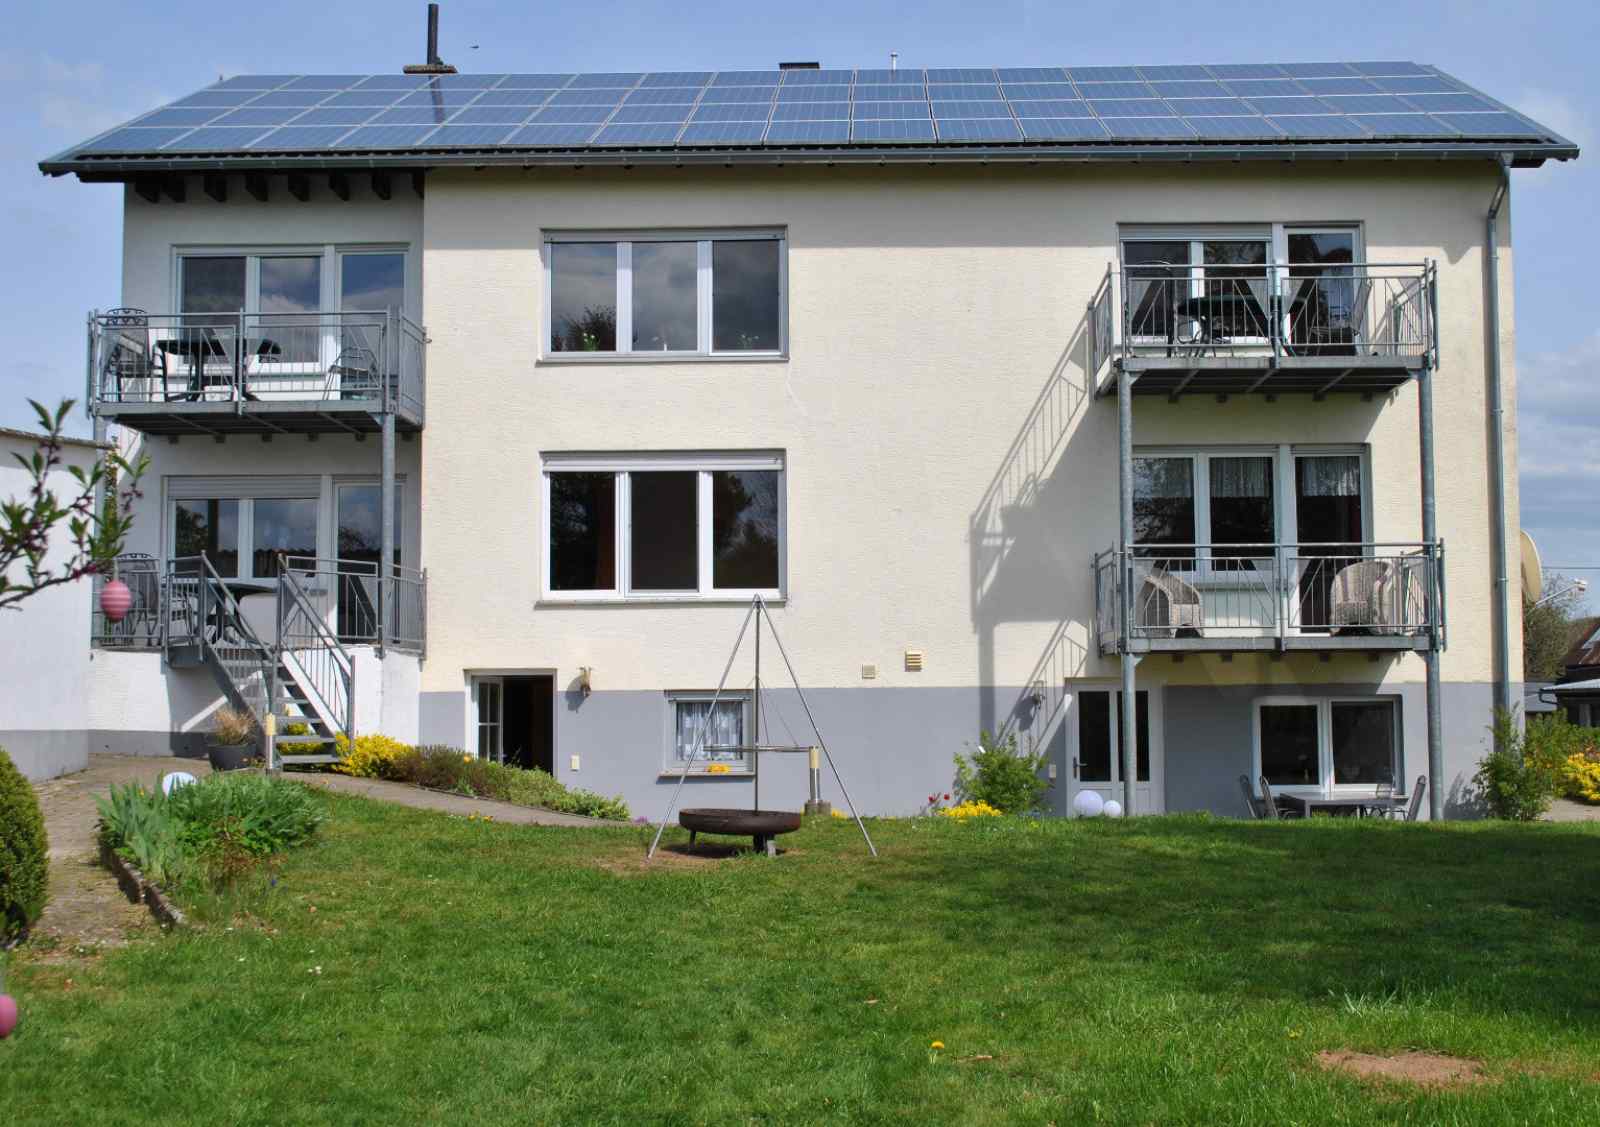 Heerlijkehuisjes.nl Mooi 4 persoons appartement in een idyllisch dorp in de Eifel - Duitsland - Europa - Oberscheidweiler